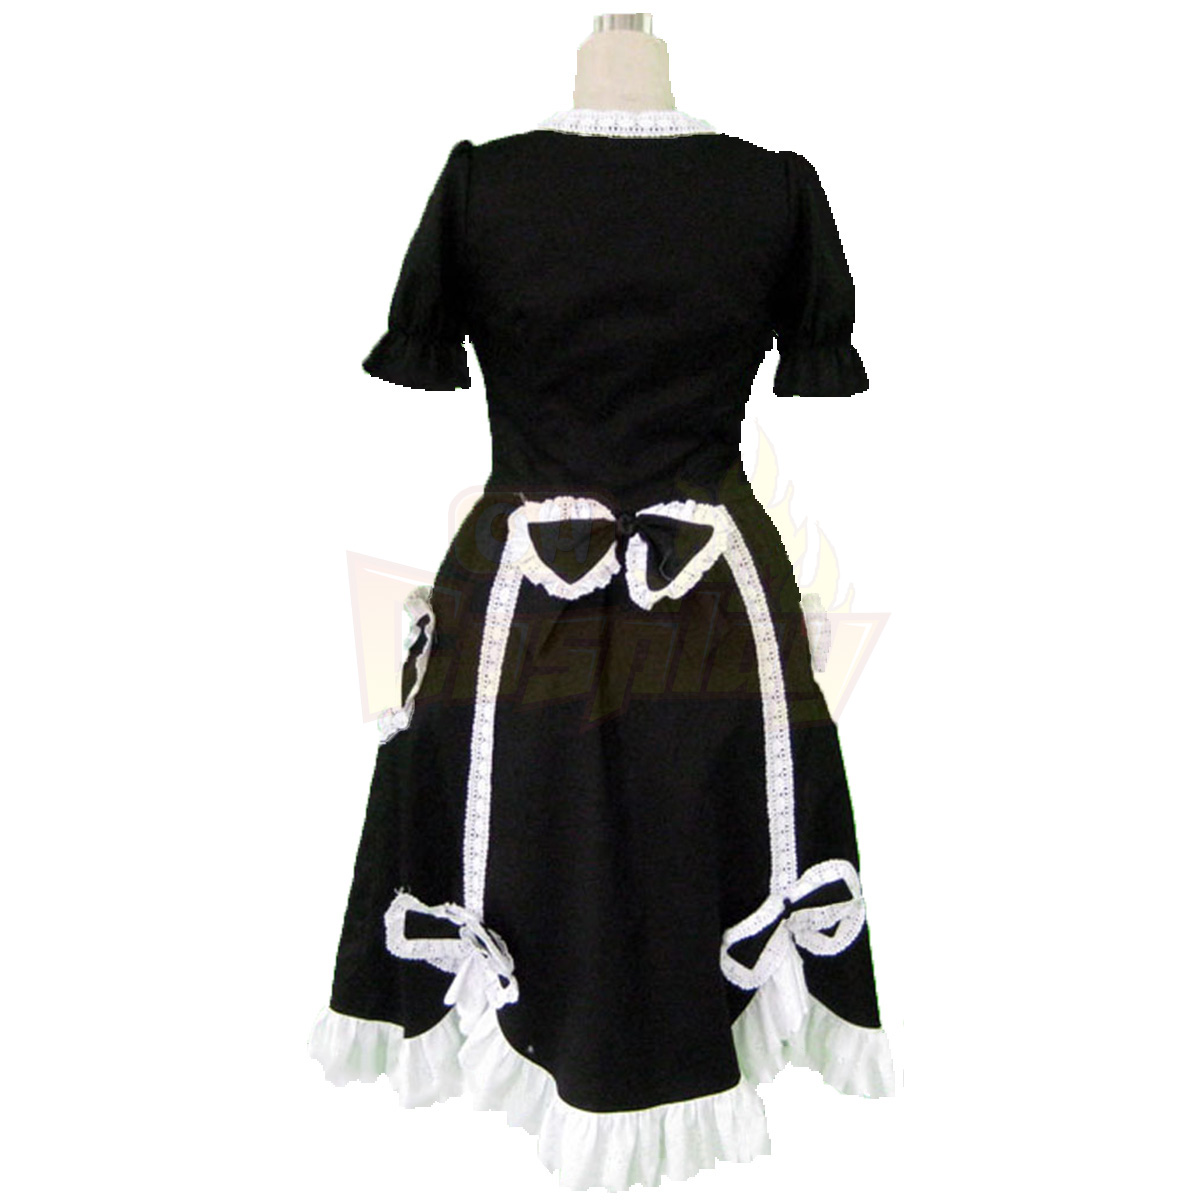 호화로운 로리타 문화 짧은 소매 긴 드레스 2 코스프레 의상